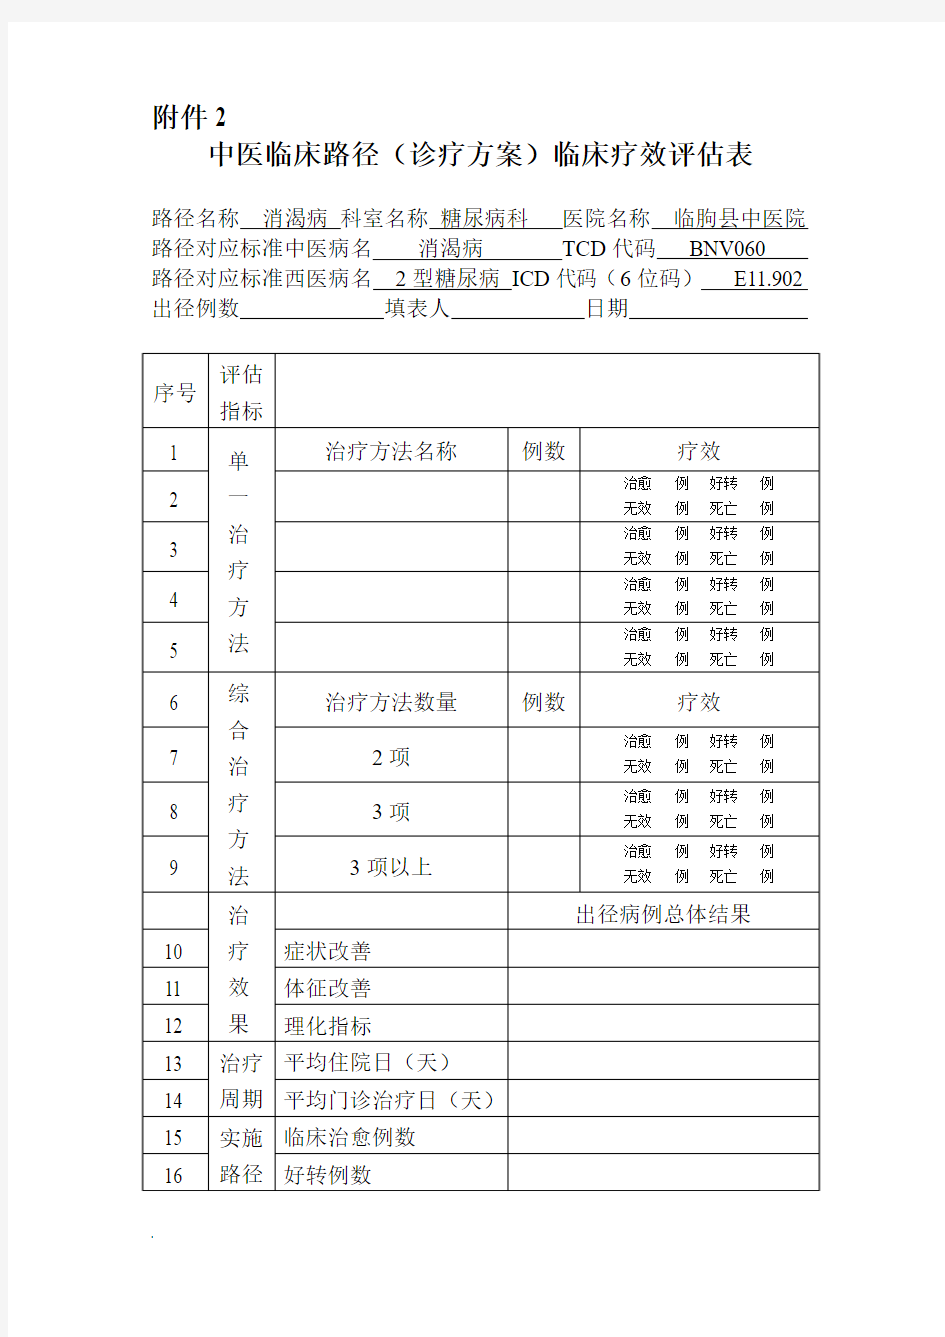 中医临床路径评估表(修订版)